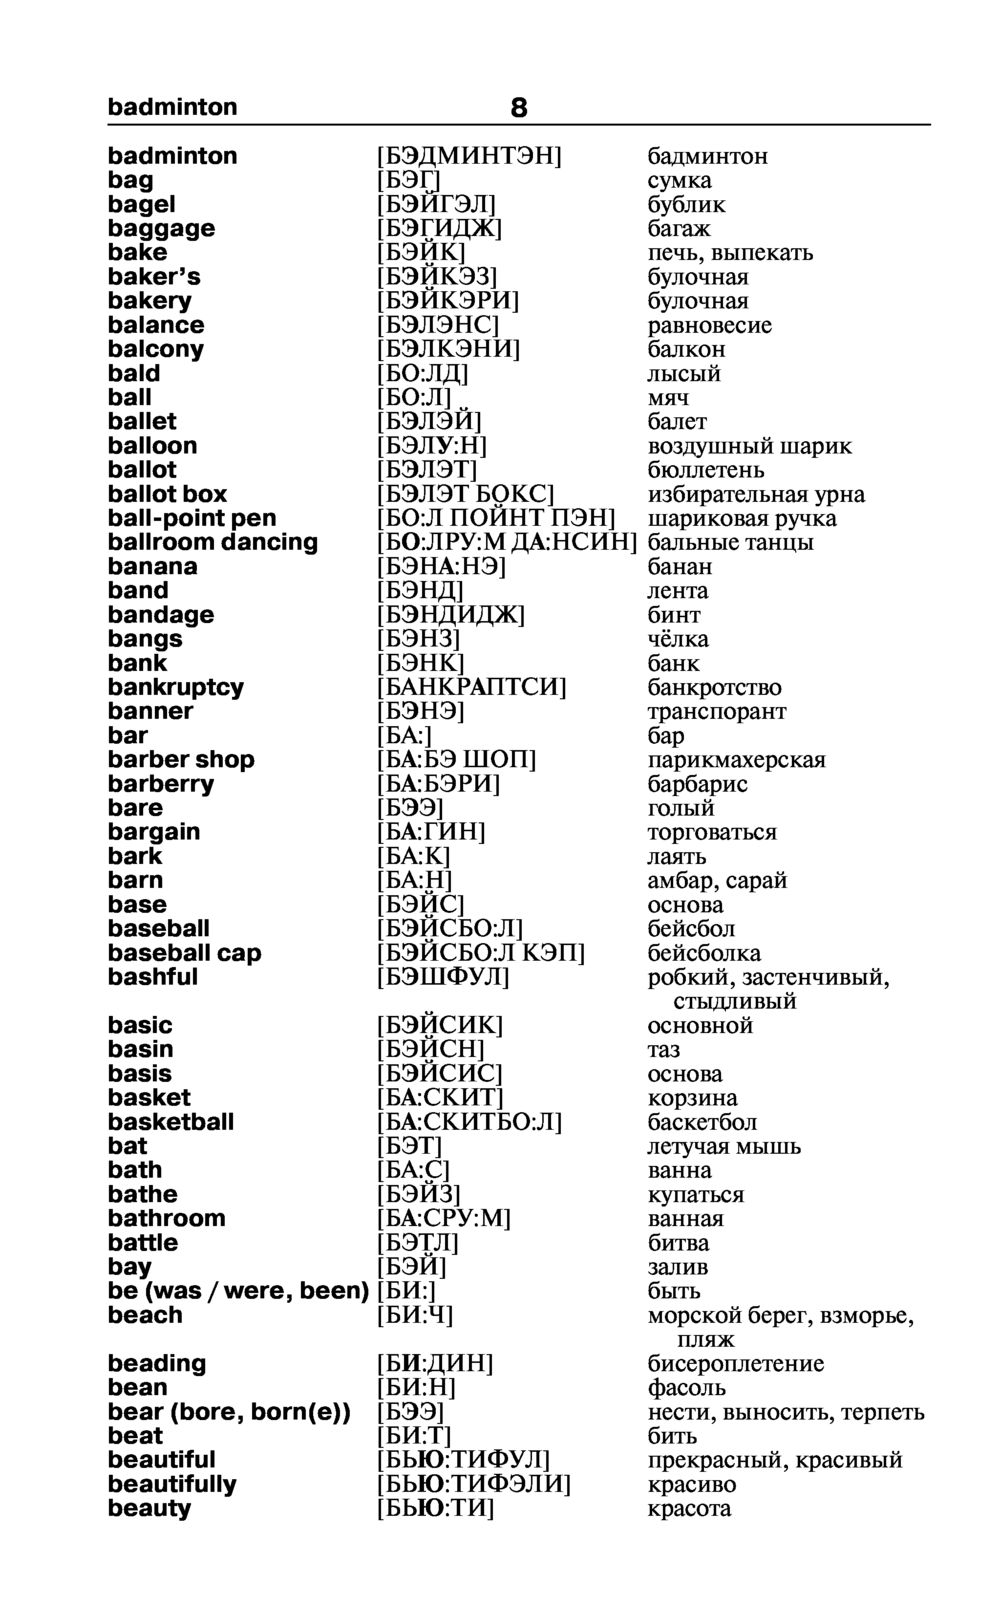 Озвученный словарь английских слов и выражений, с картинками